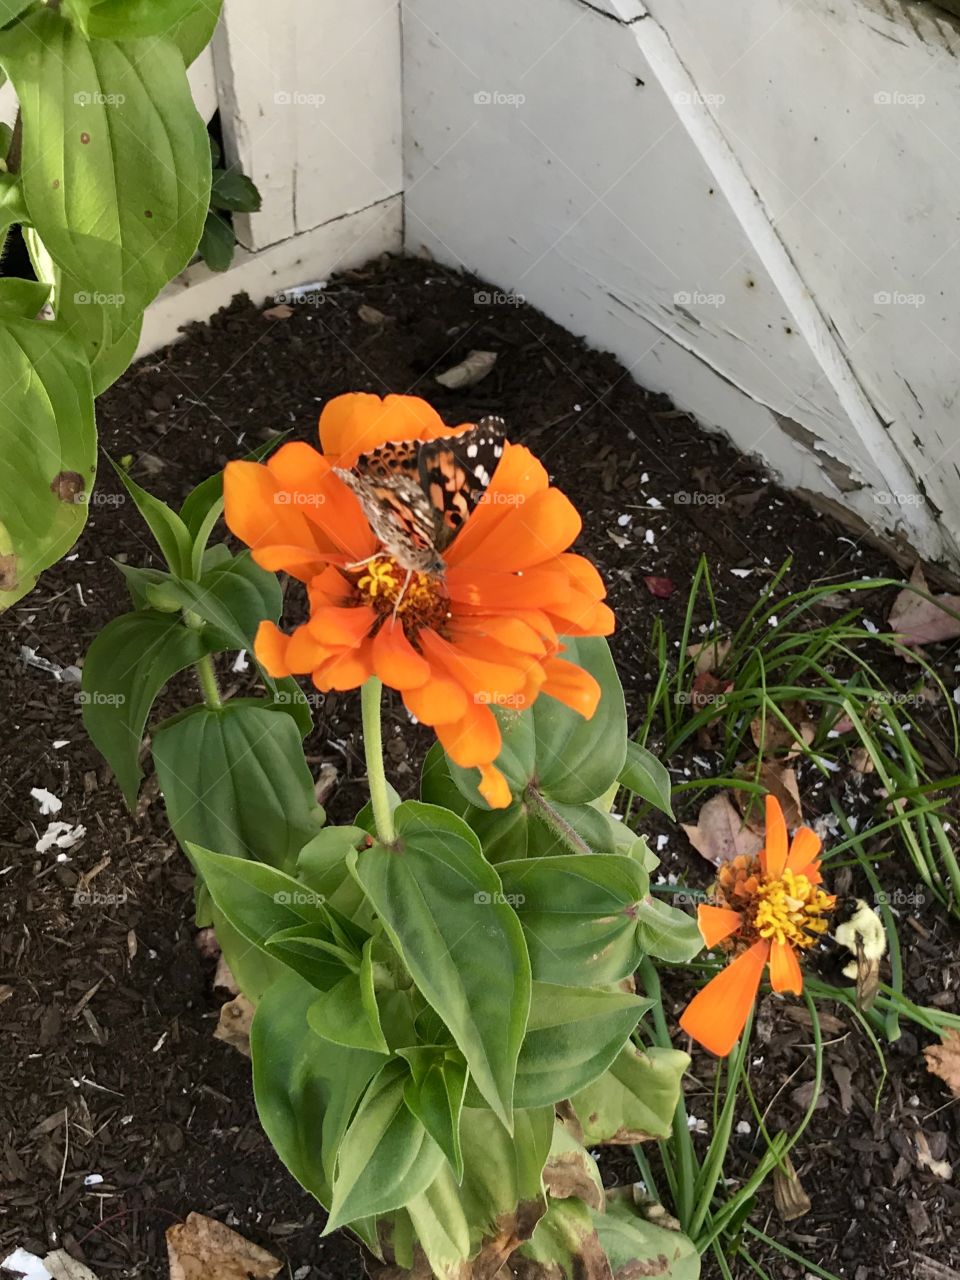 Summer butterfly on an orange flower 